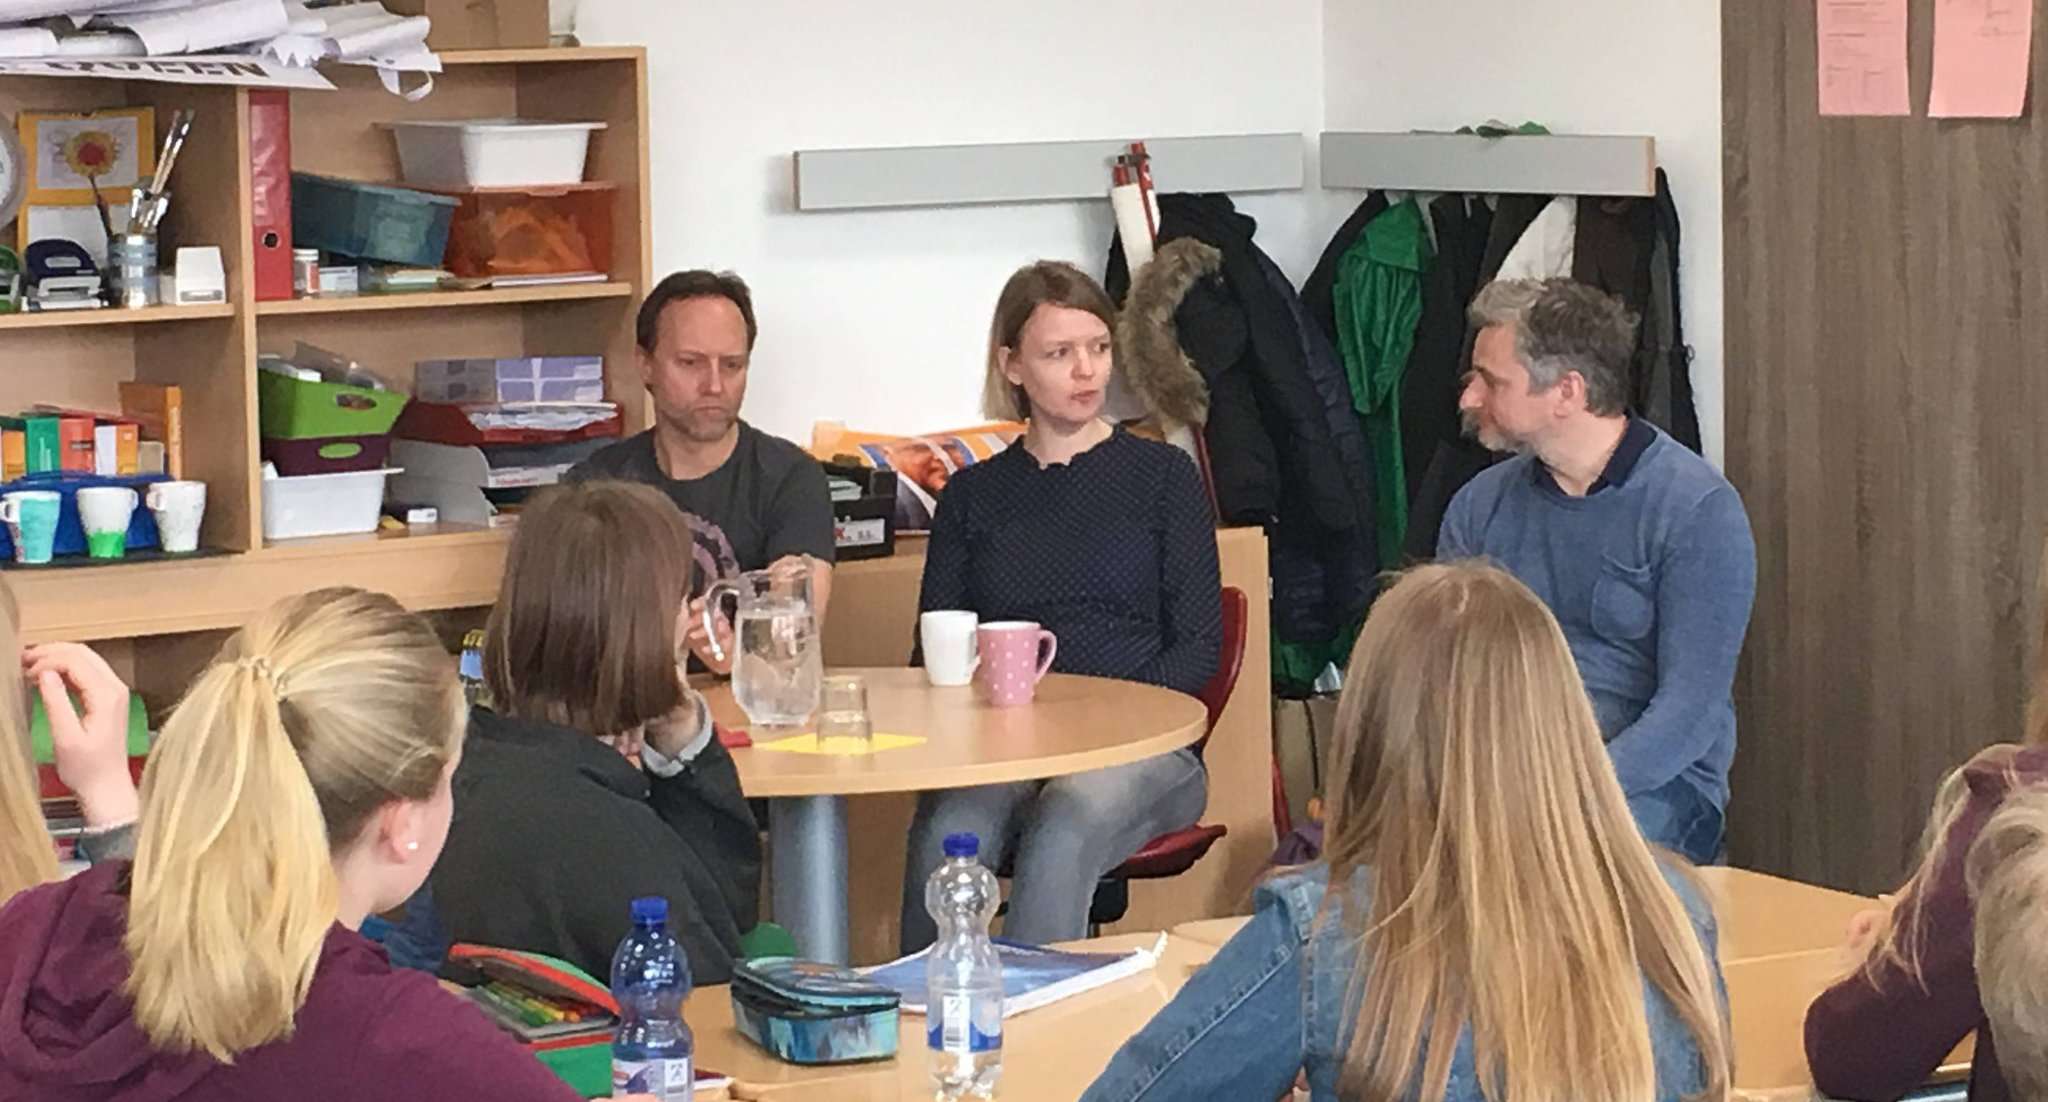 Dennis Kaupp (von links am Tisch sitzend), Alicia Anker und Jesko Friedrich von der NDR Satiresendung 